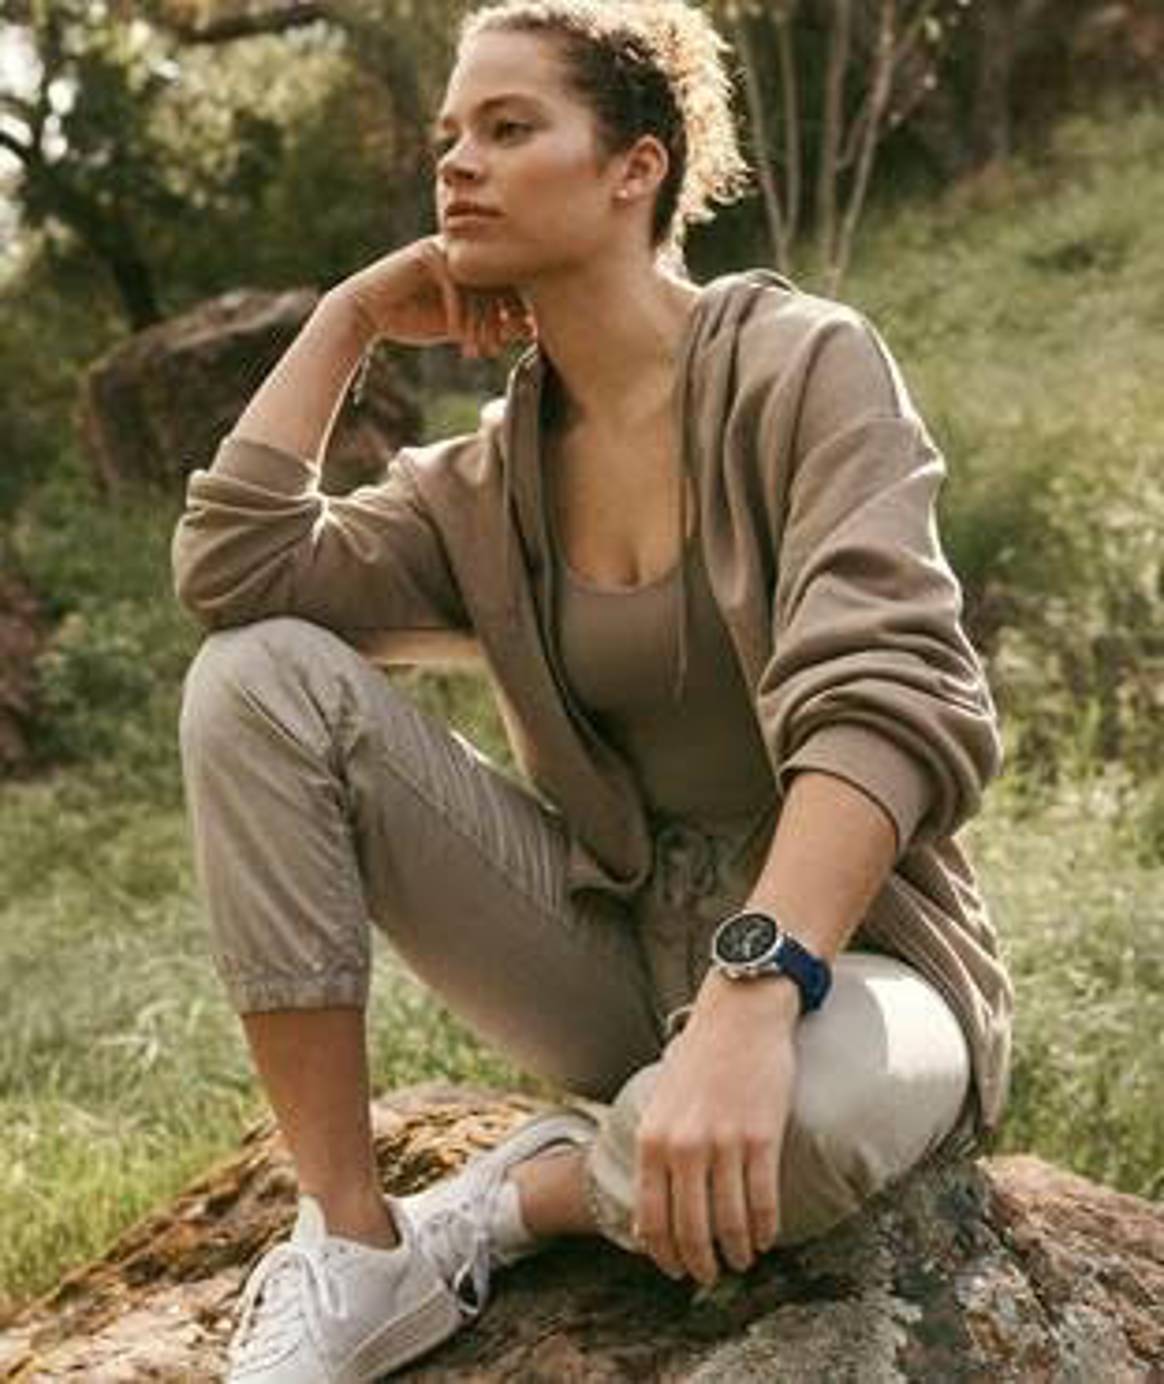 FOSSIL lanza una nueva generación de su gama de wearables enfocada en el bienestar: el smartwatch gen 6 wellness edition